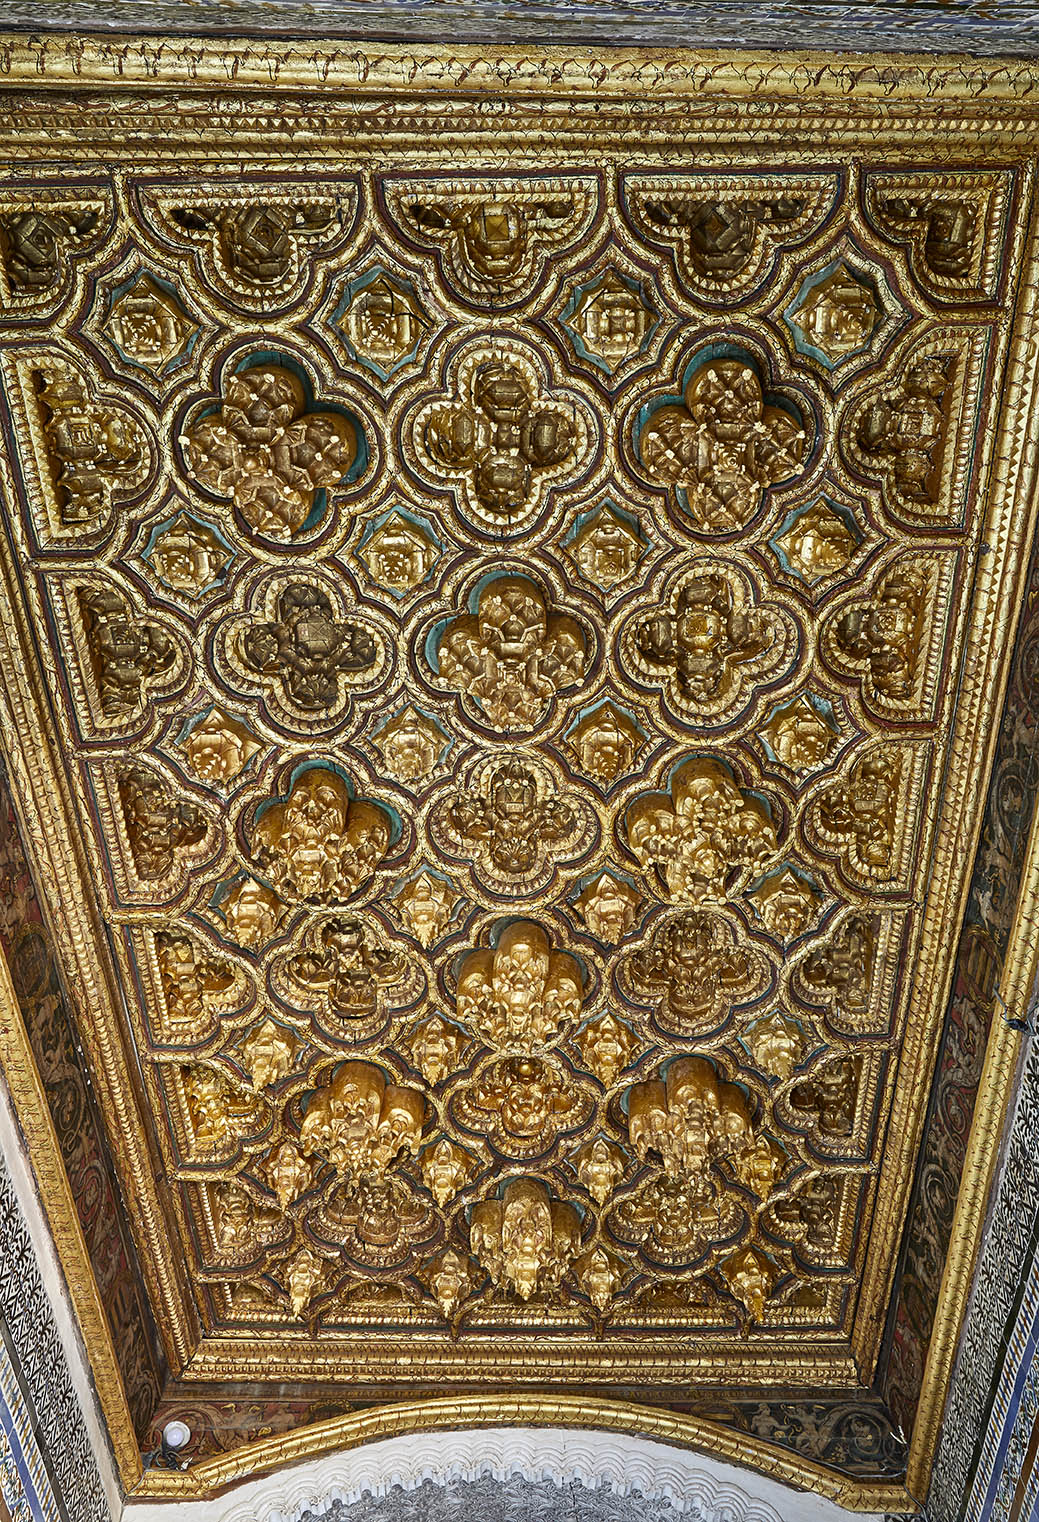 È stato completato il restauro degli alfarjes della scala principale della Casa de Pilatos.